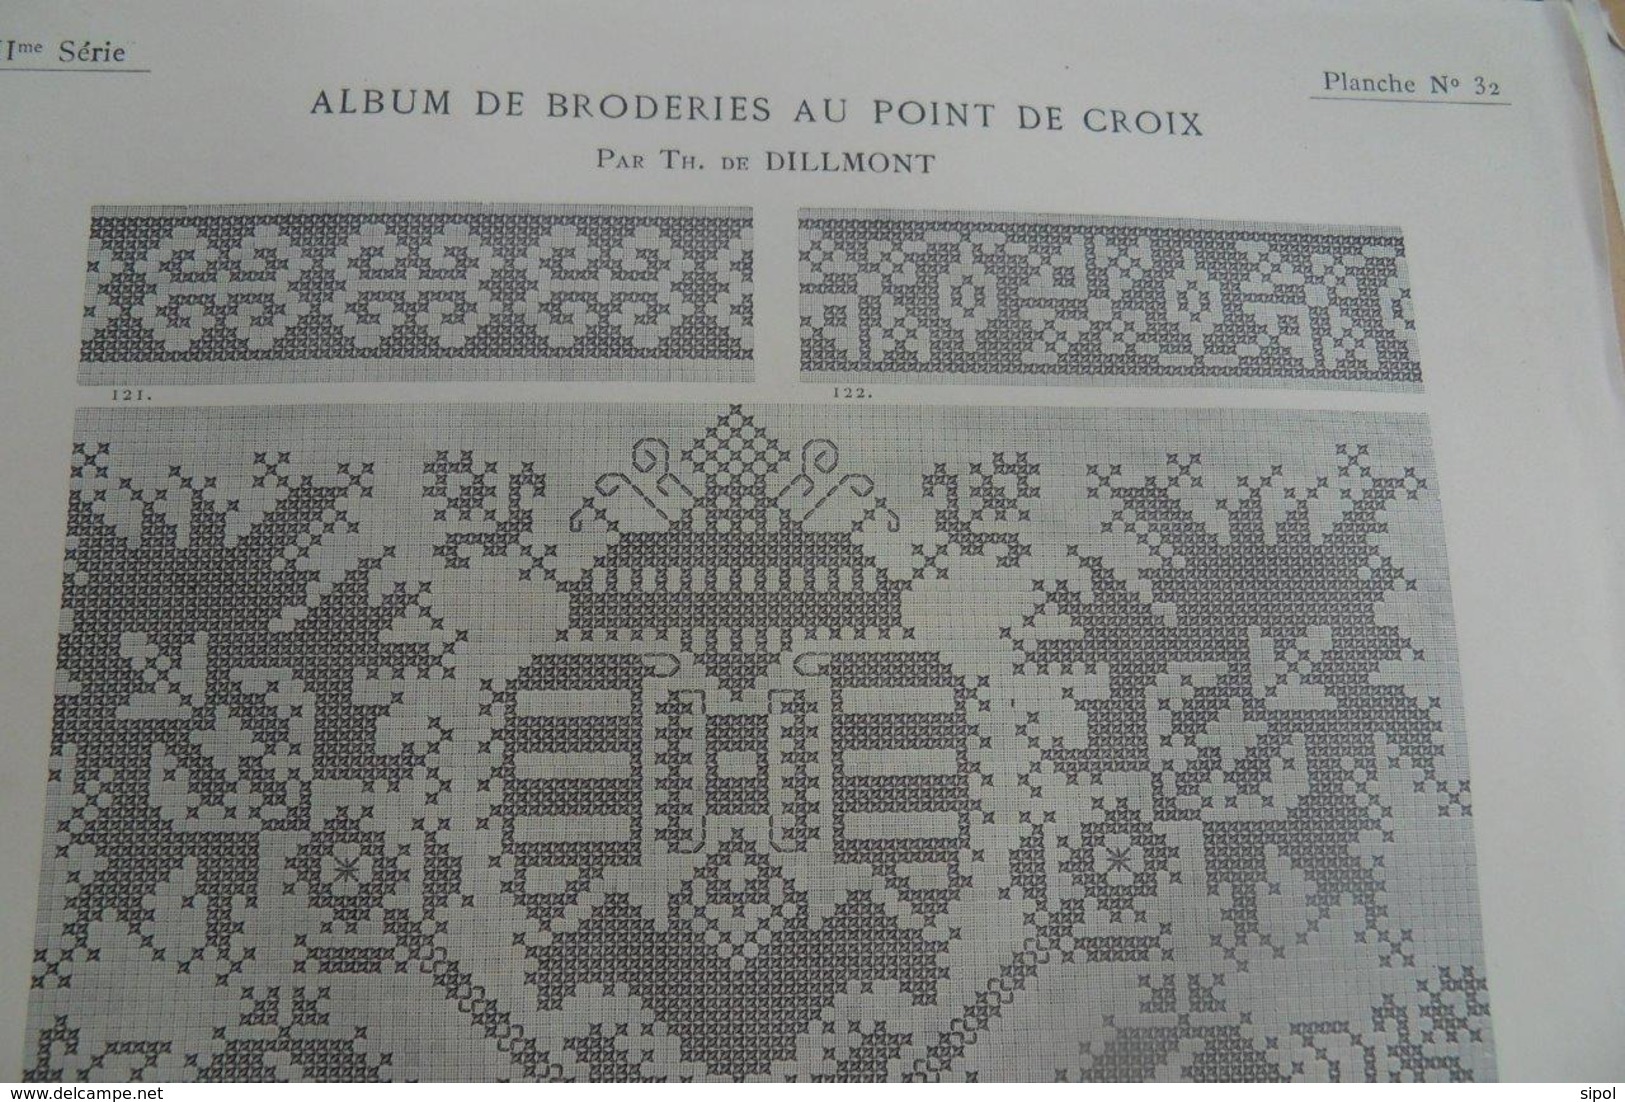 DMC Albums - X 2 - broderies au point de croix parTH de Dillmont  II ème & III ème séries Début 1900 Dans chemise carton